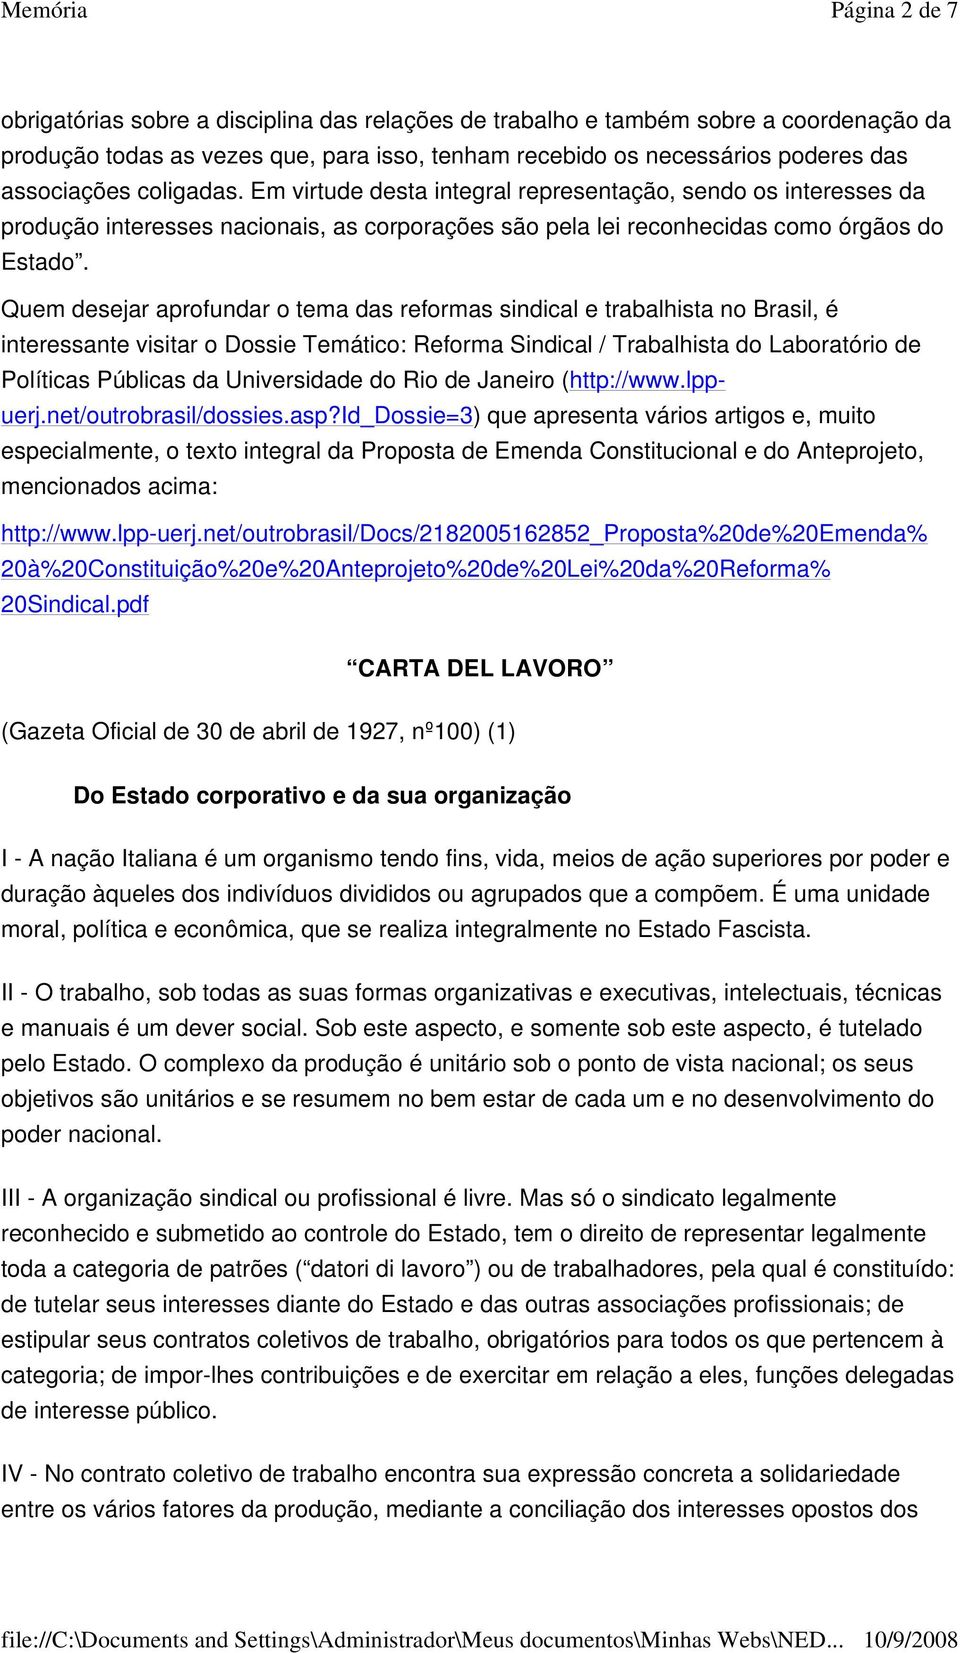 Quem desejar aprofundar o tema das reformas sindical e trabalhista no Brasil, é interessante visitar o Dossie Temático: Reforma Sindical / Trabalhista do Laboratório de Políticas Públicas da